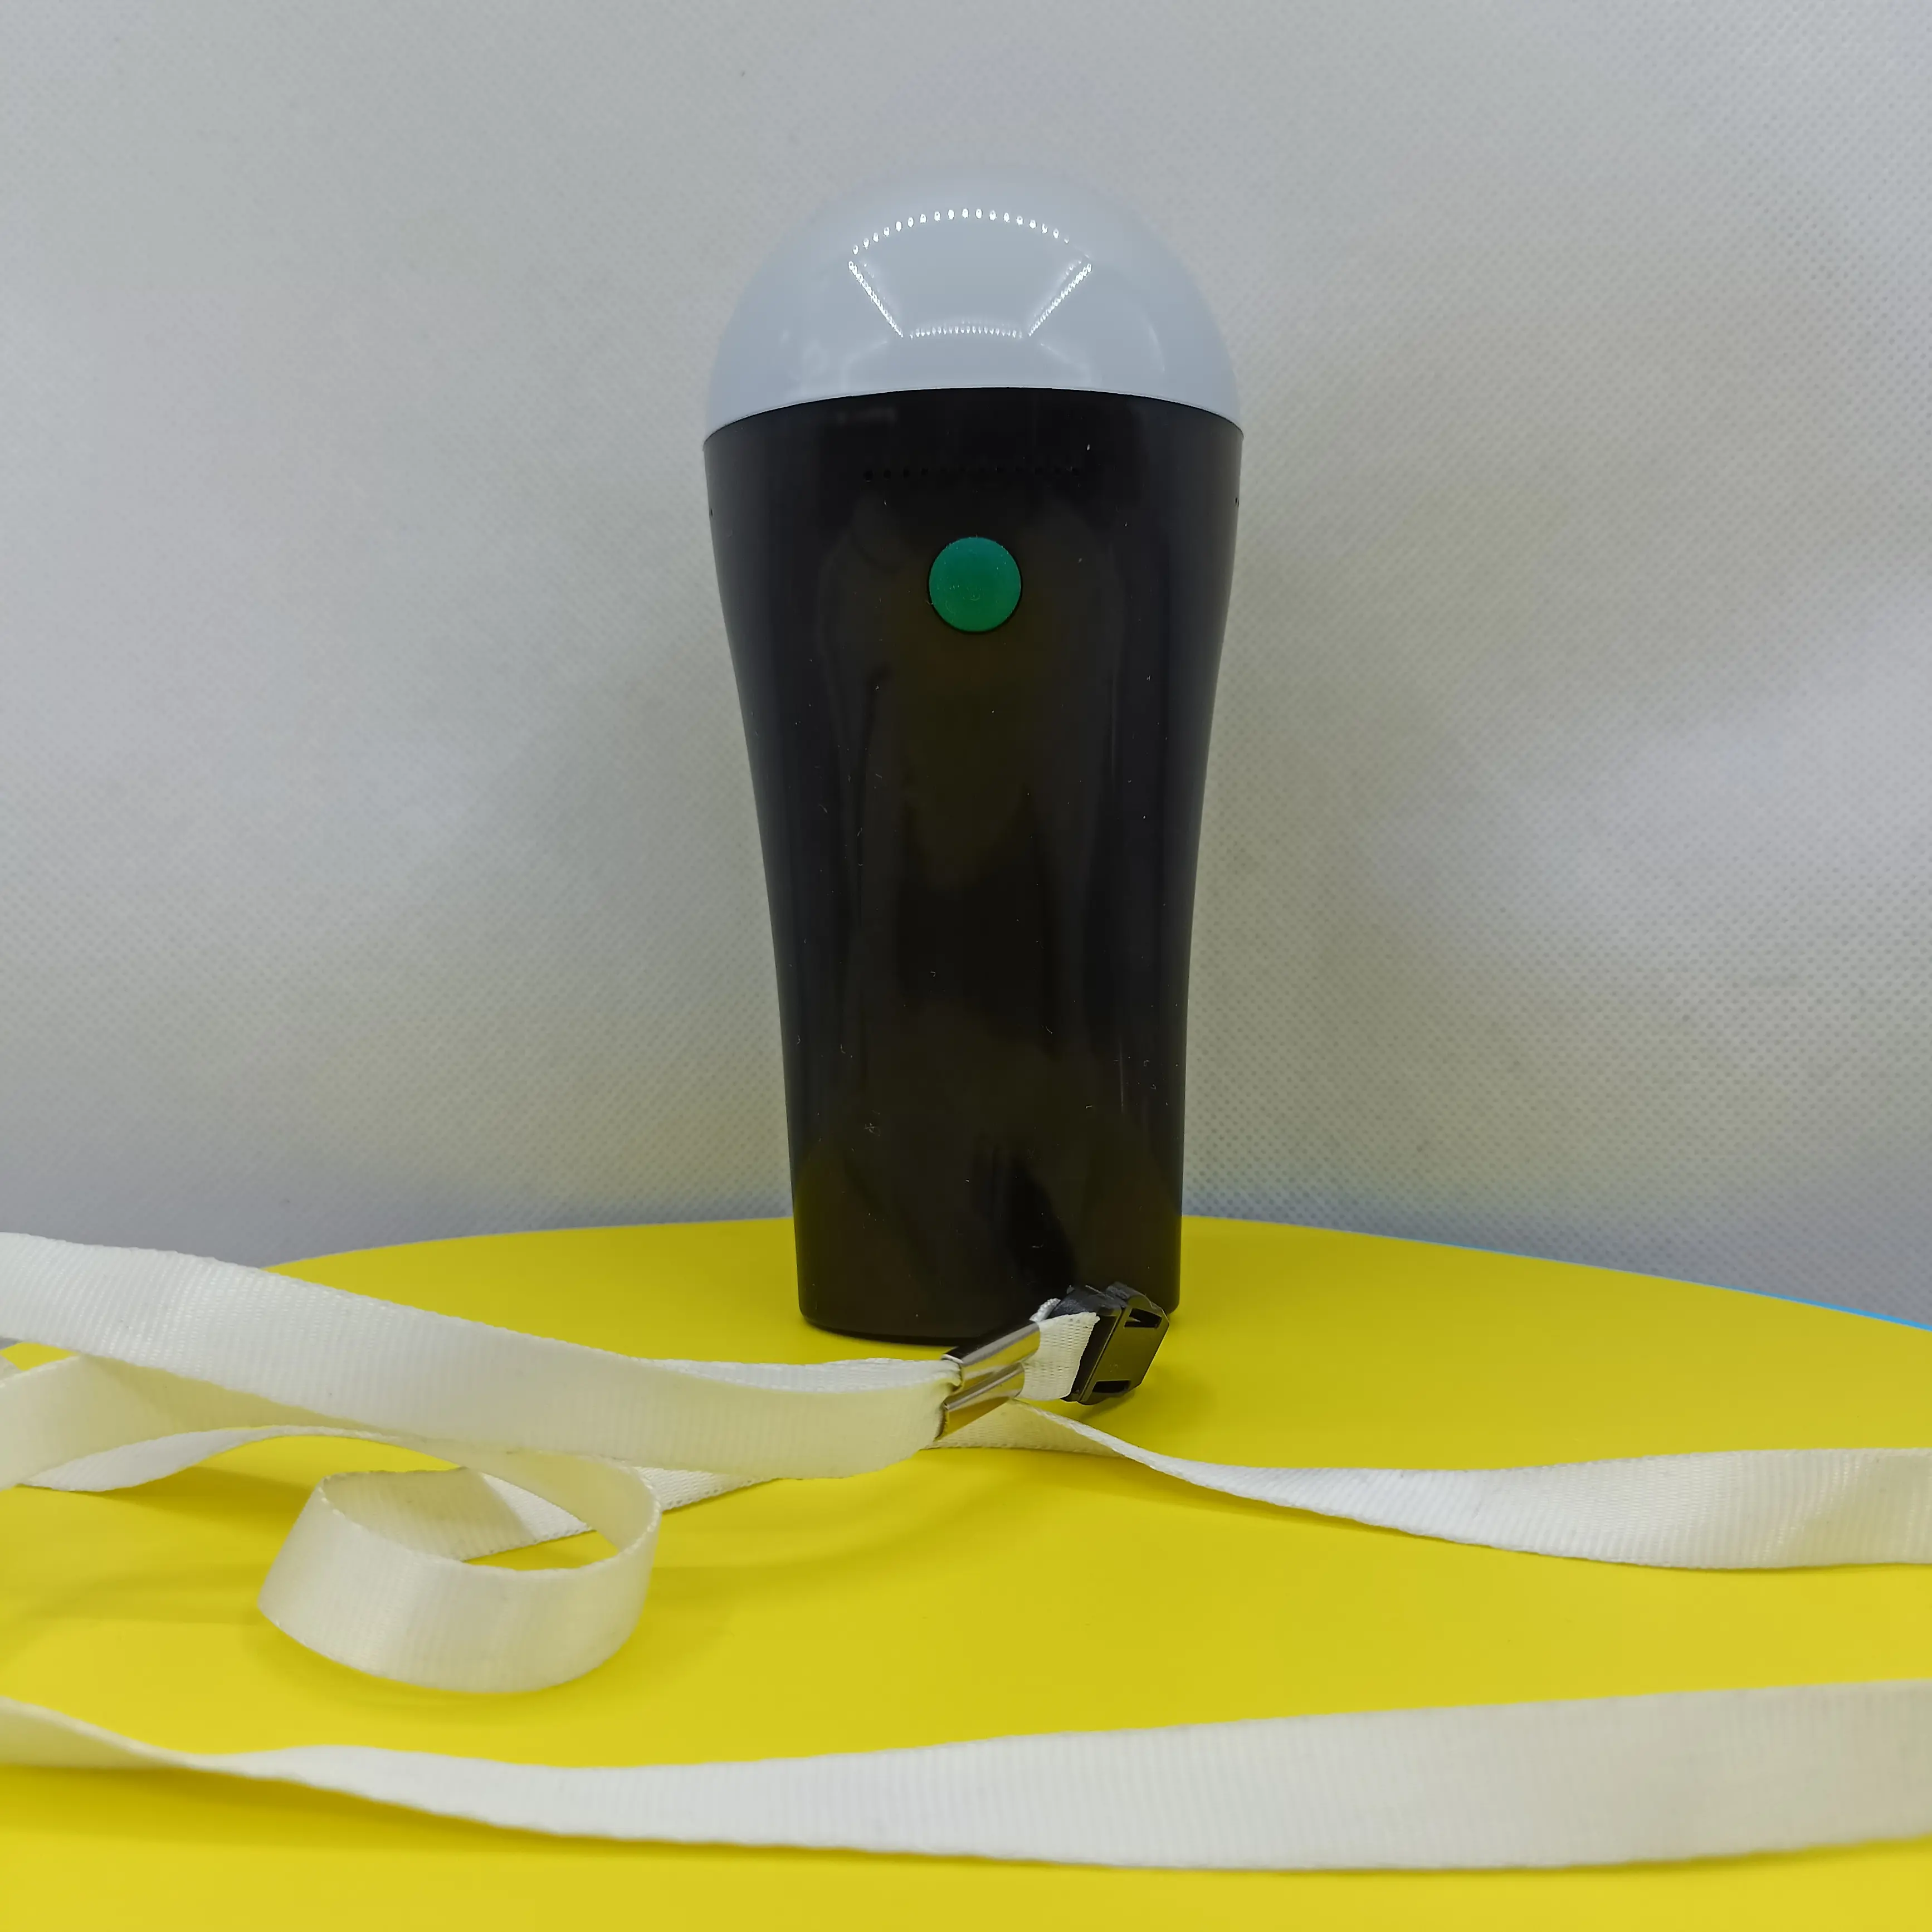 Fábrica de China Super brillante al aire libre LED ODM OEM copia de seguridad de emergencia bombilla solar con batería colgante luz antorcha barbacoa bombilla lámpara